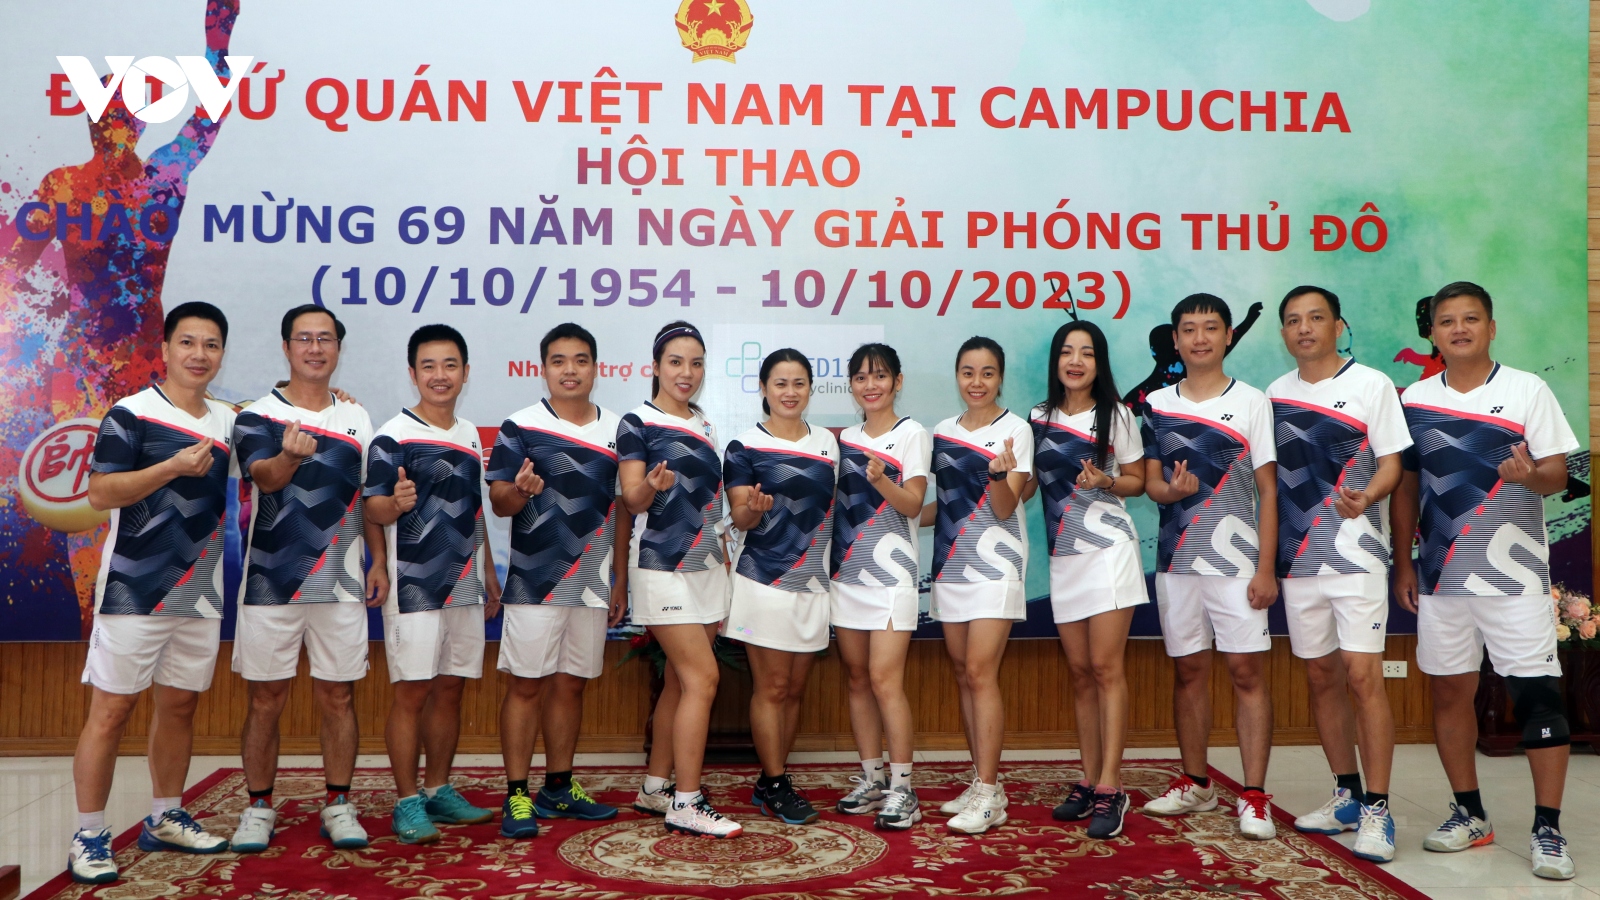 Người Việt tại Campuchia tổ chức giải thể thao kỷ niệm Ngày Giải phóng Thủ đô